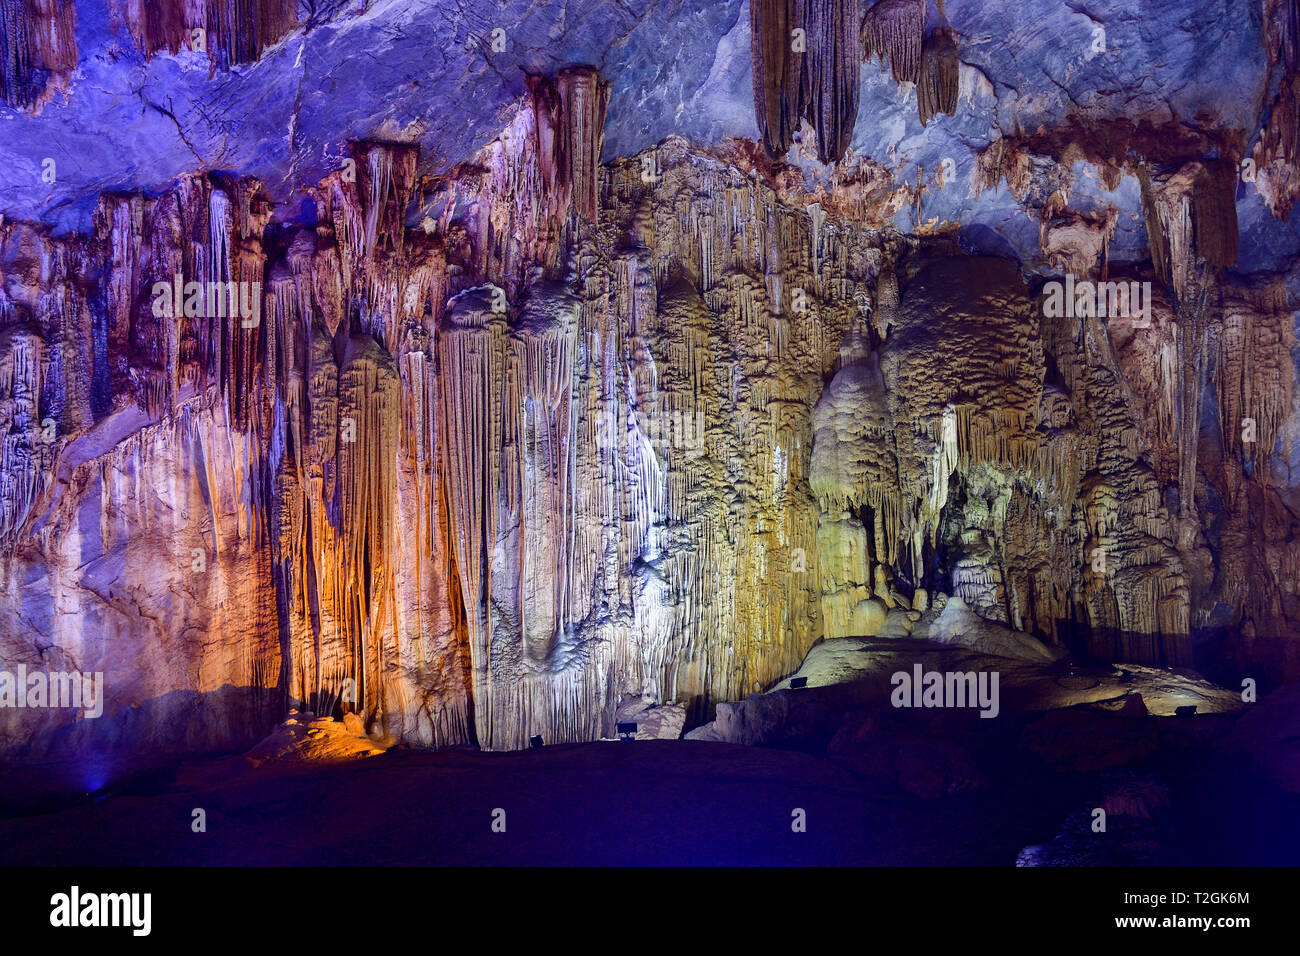 Beeindruckende geologische Formen im Paradies Höhle in der Nähe von Phong Nha, Vietnam. Kalkstein Höhle voller Stalaktiten und Stalagmiten. Stockfoto